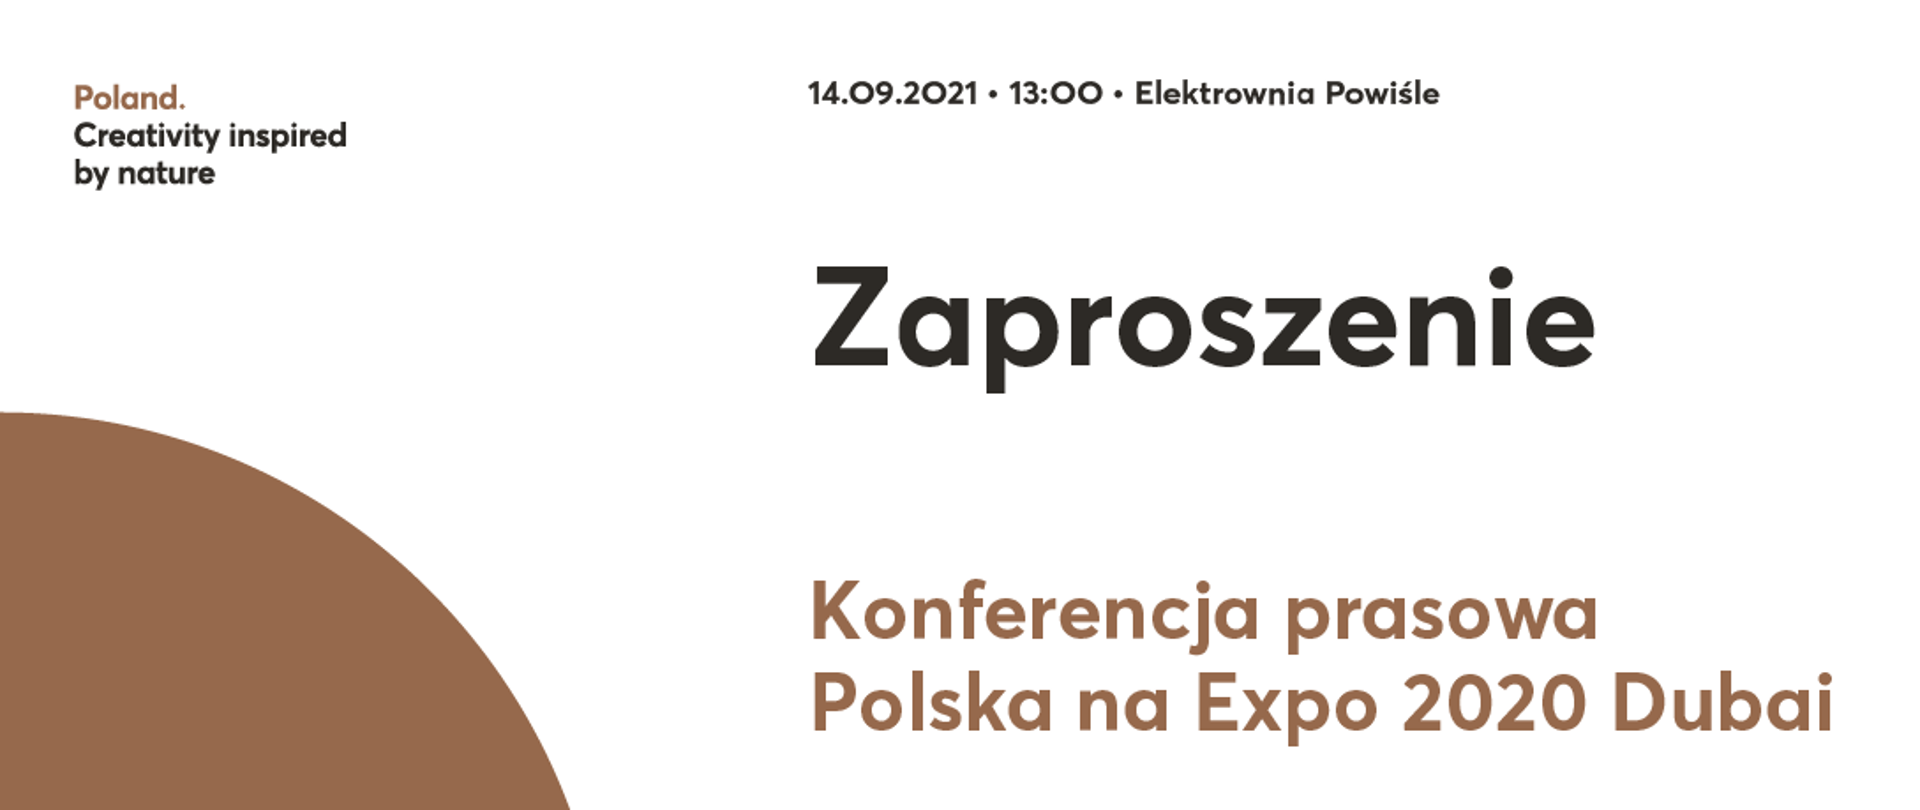 Konferencja prasowa ws. obecności Polski na Expo 2020 w Dubaju